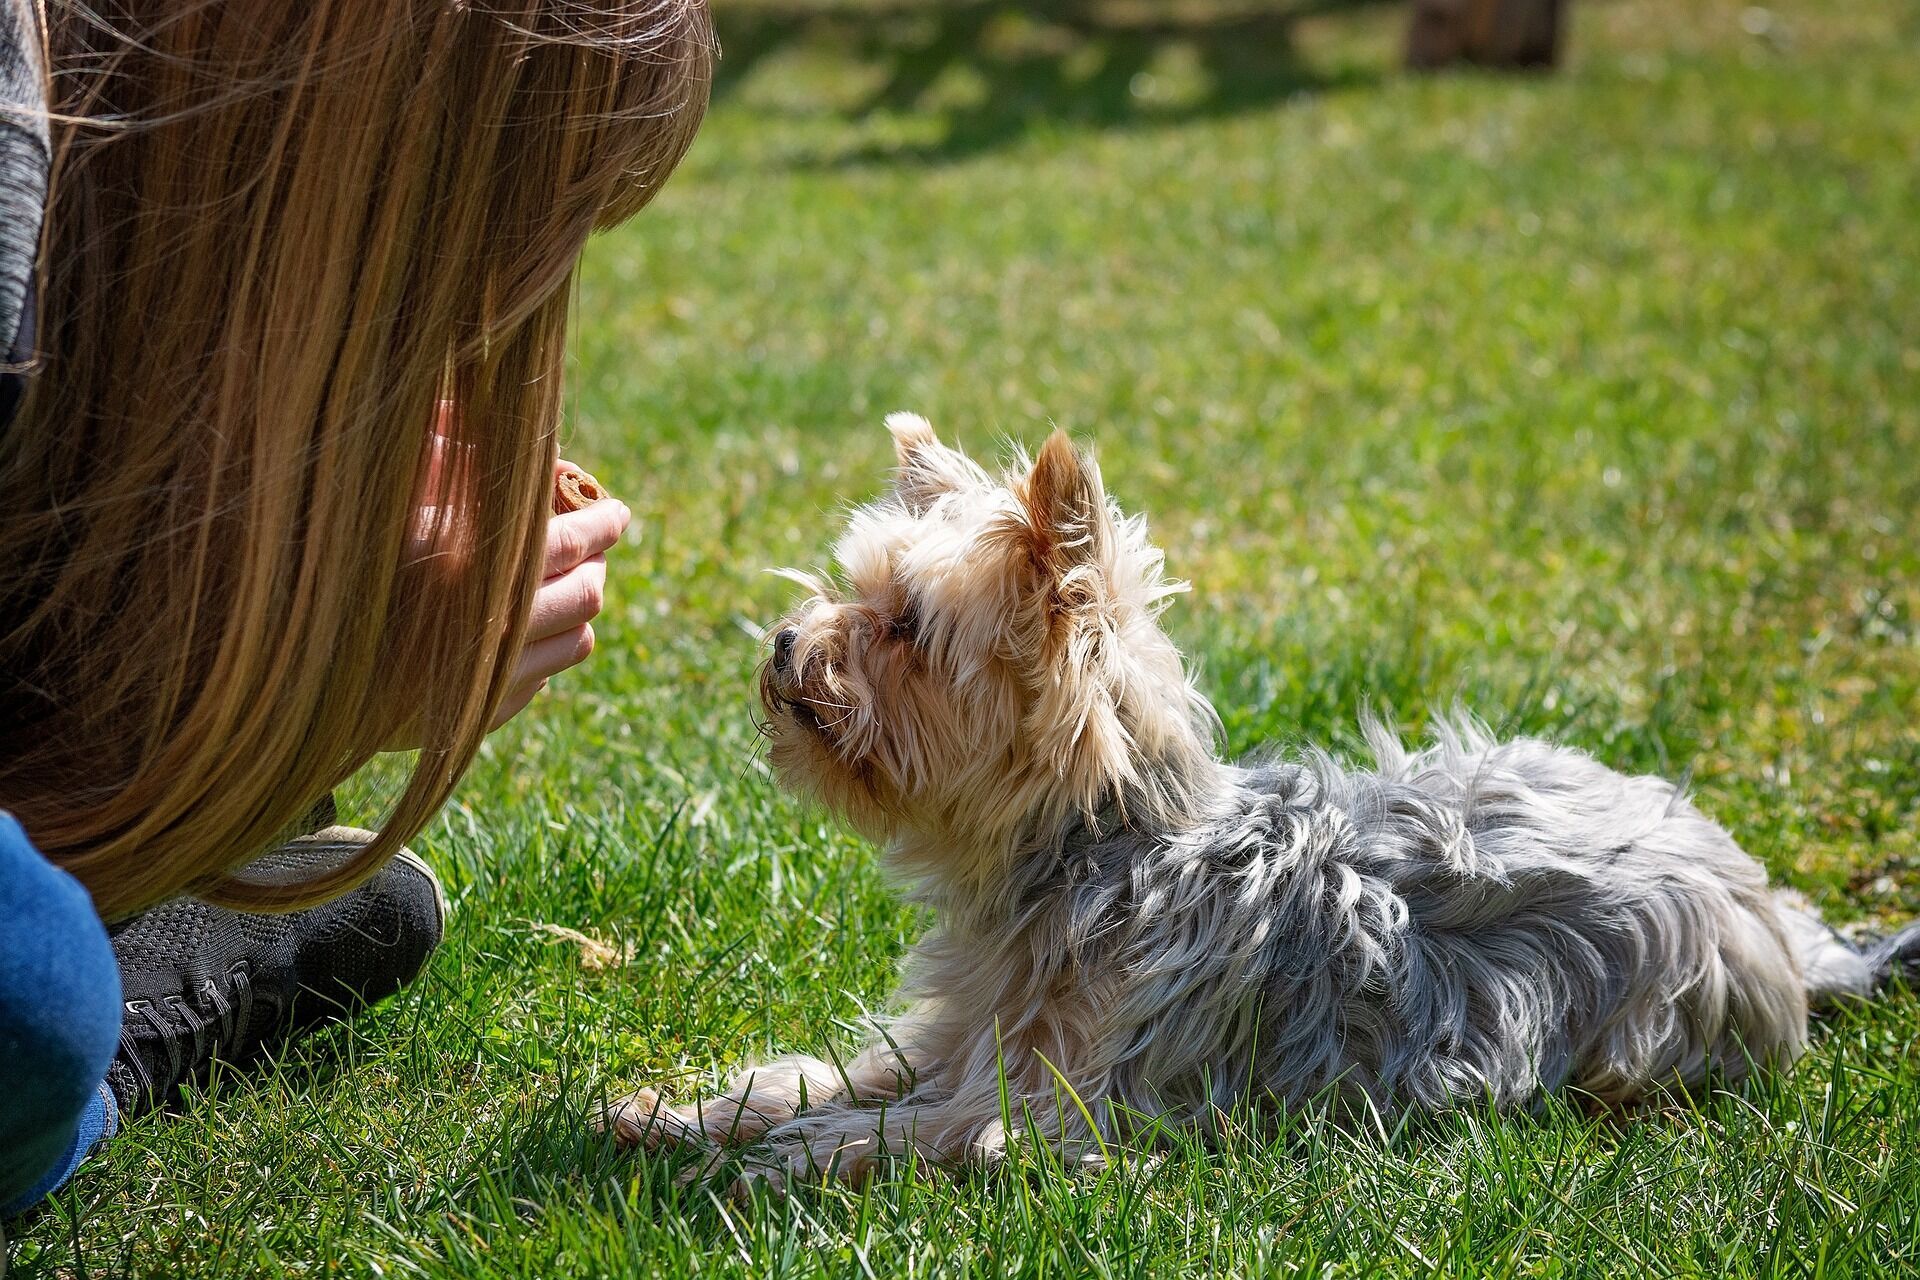 Як правильно виховати собаку: 5 найпоширеніших помилок у дресируванні вихованців